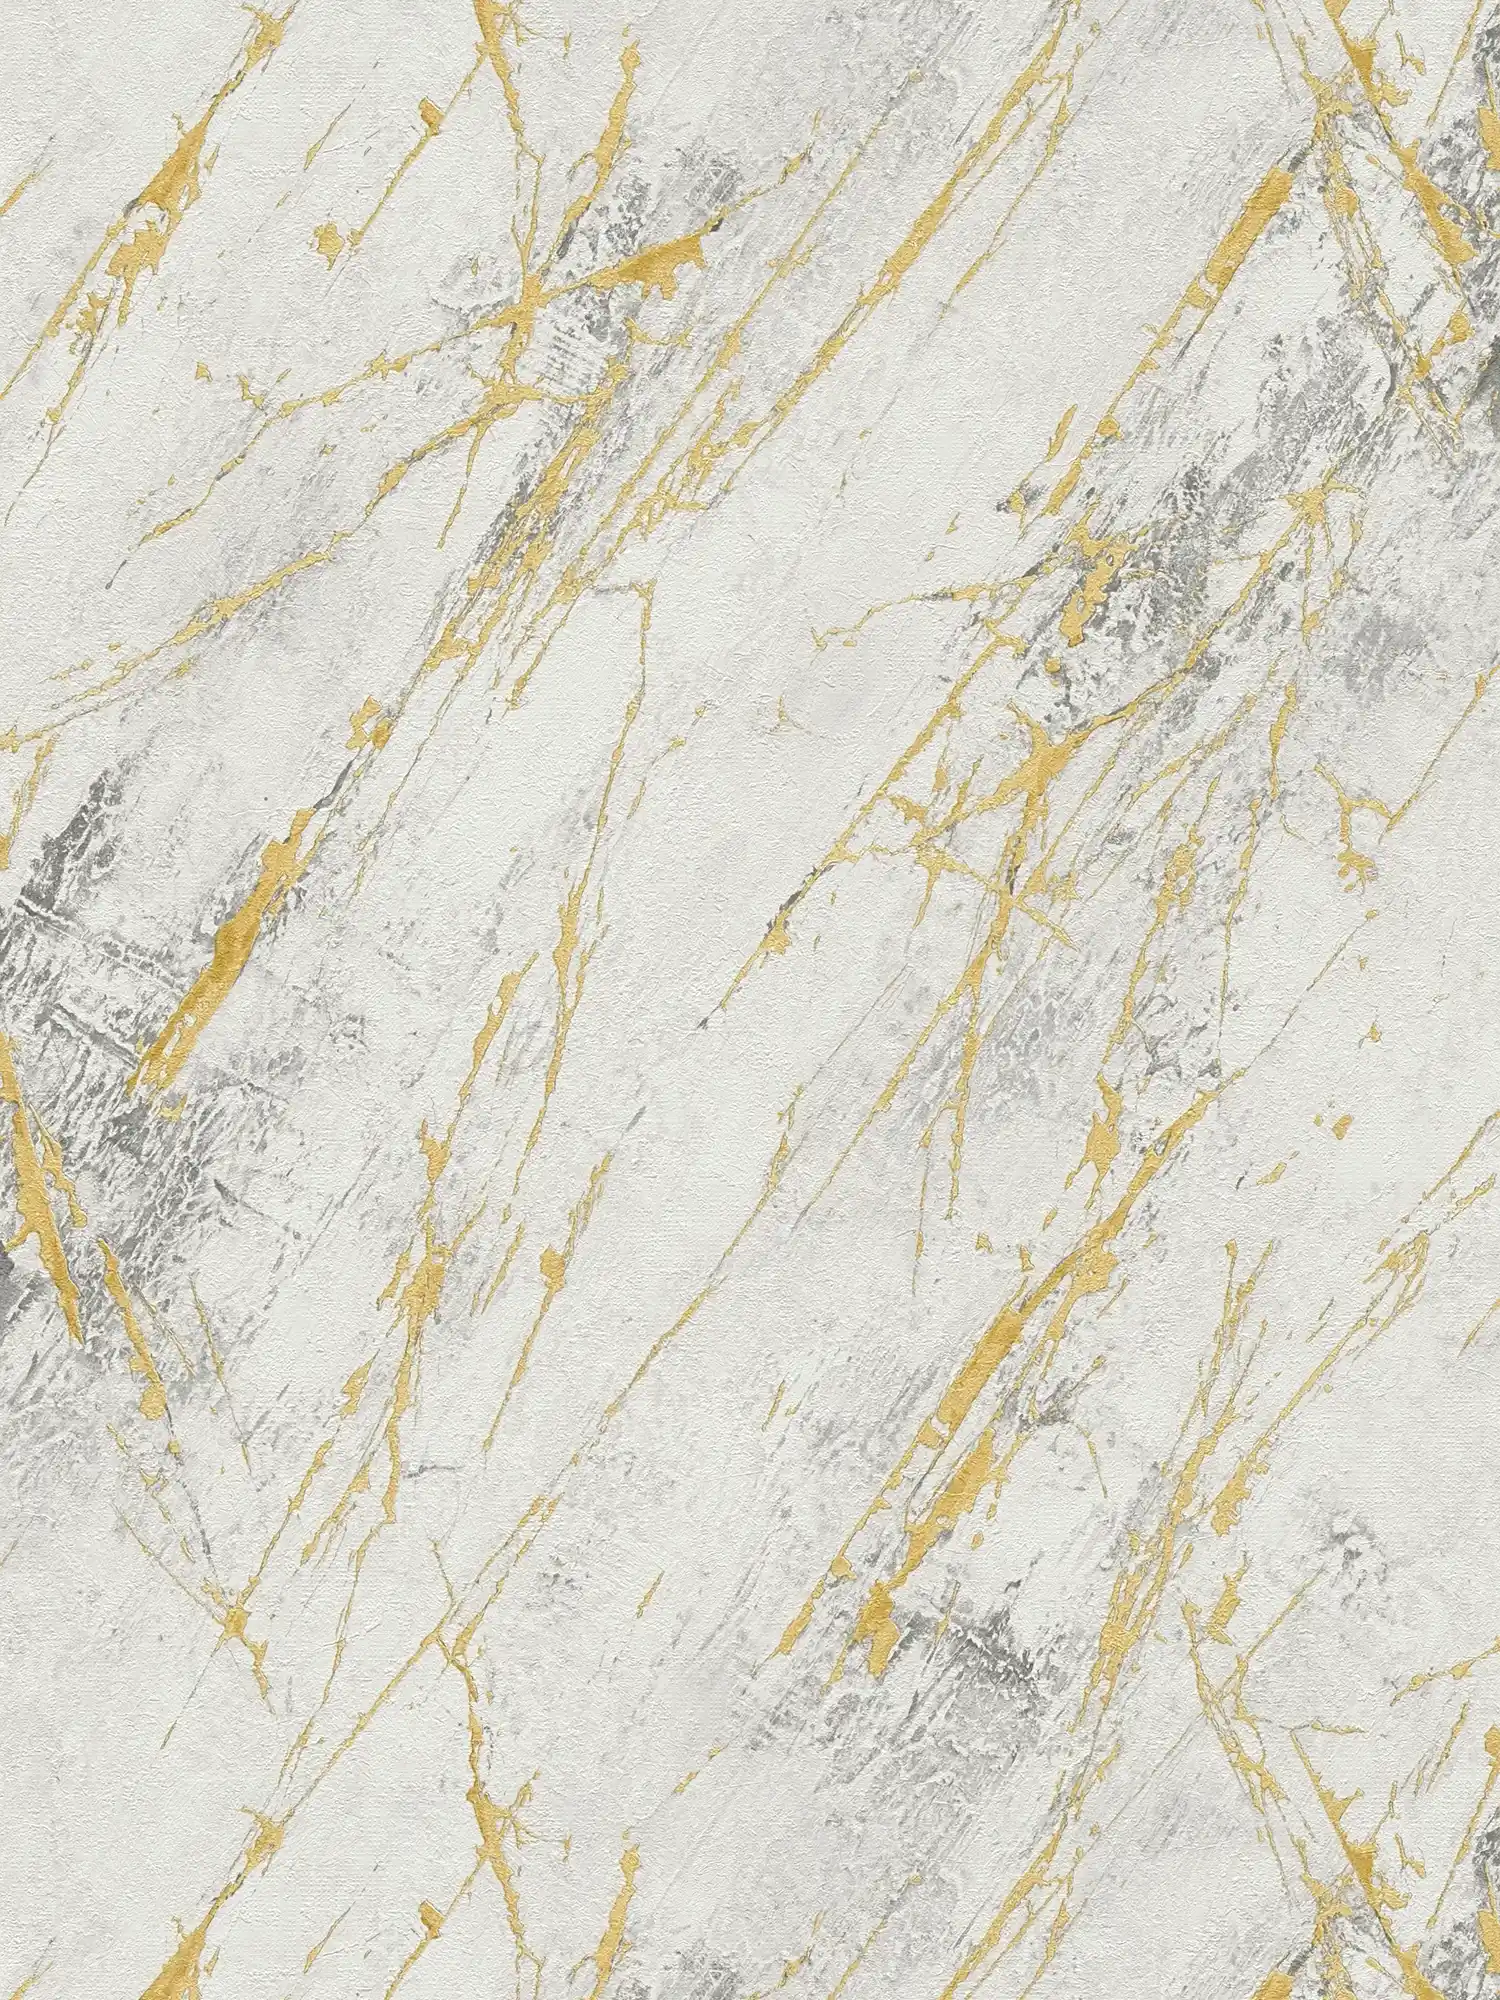         Gold marble wallpaper with metallic texture design - white, metallic
    